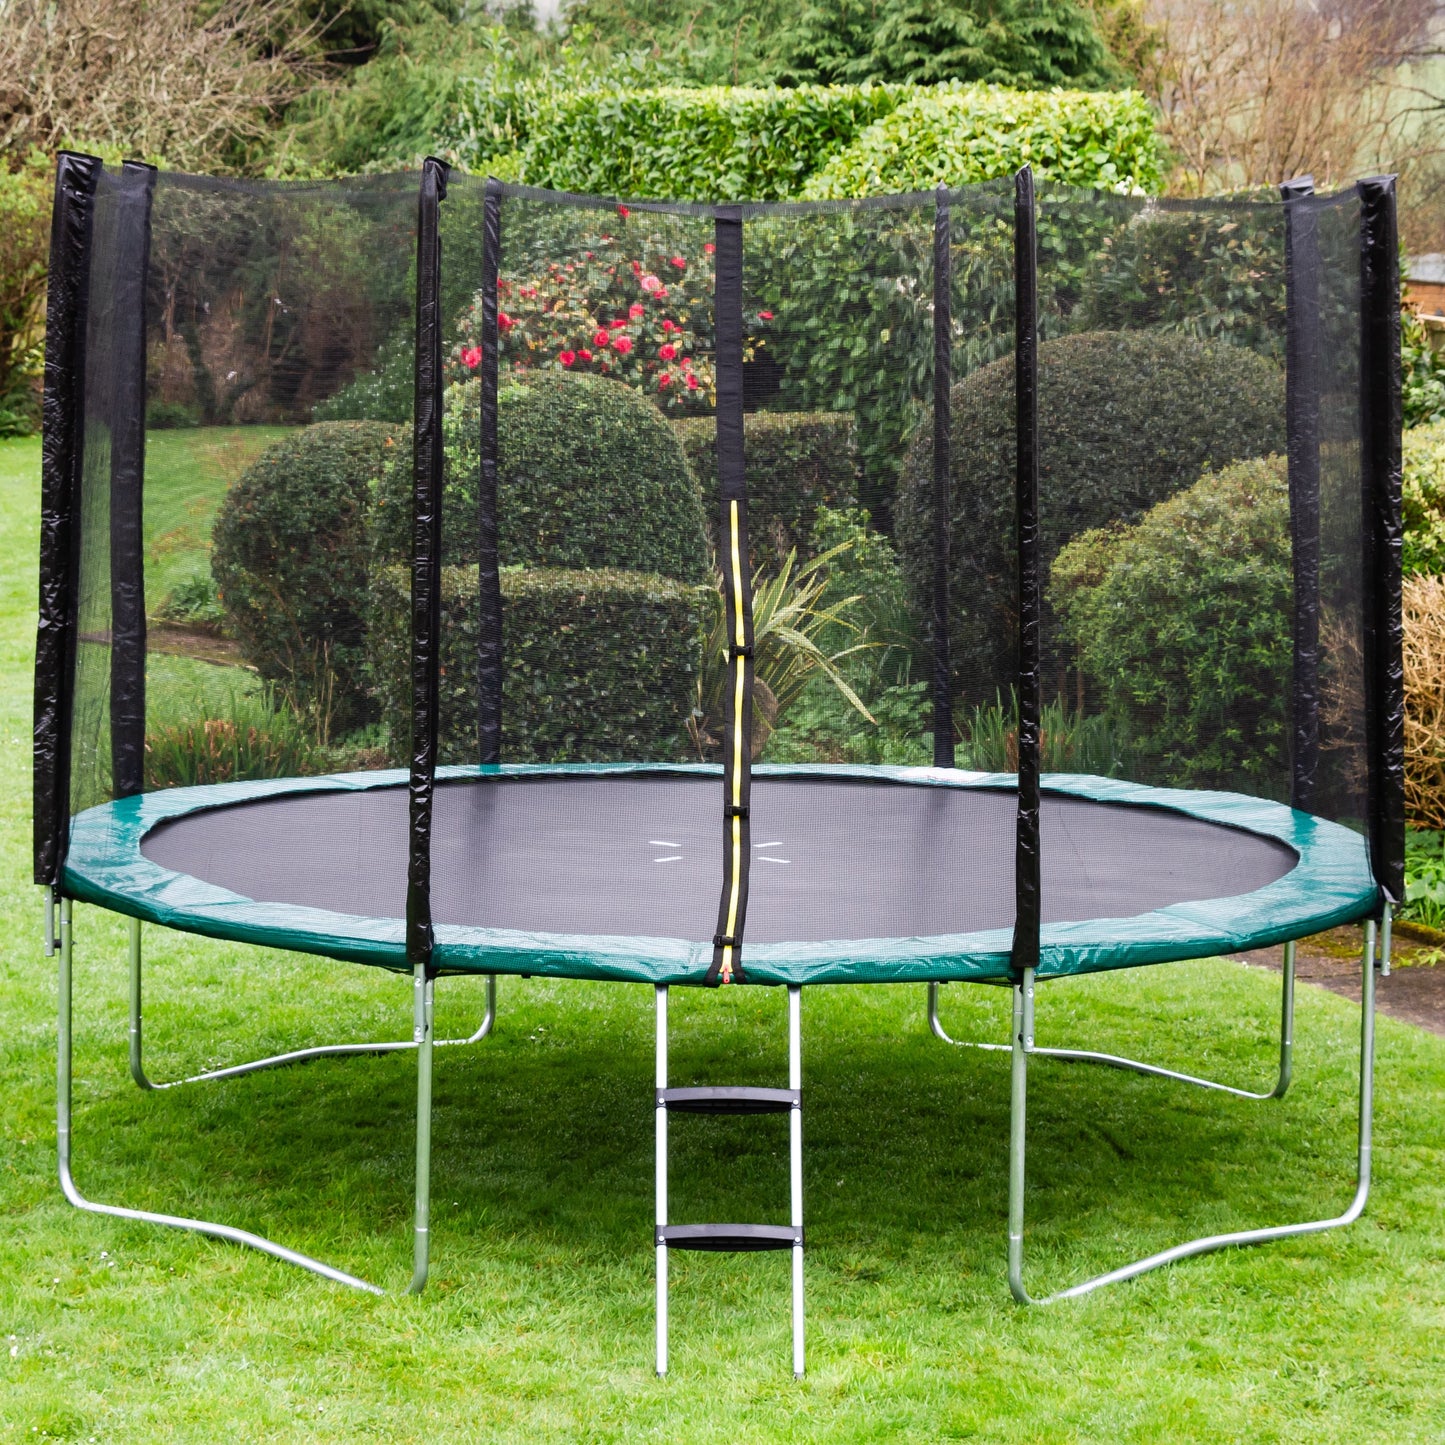 Kanga 16ft trampoline package